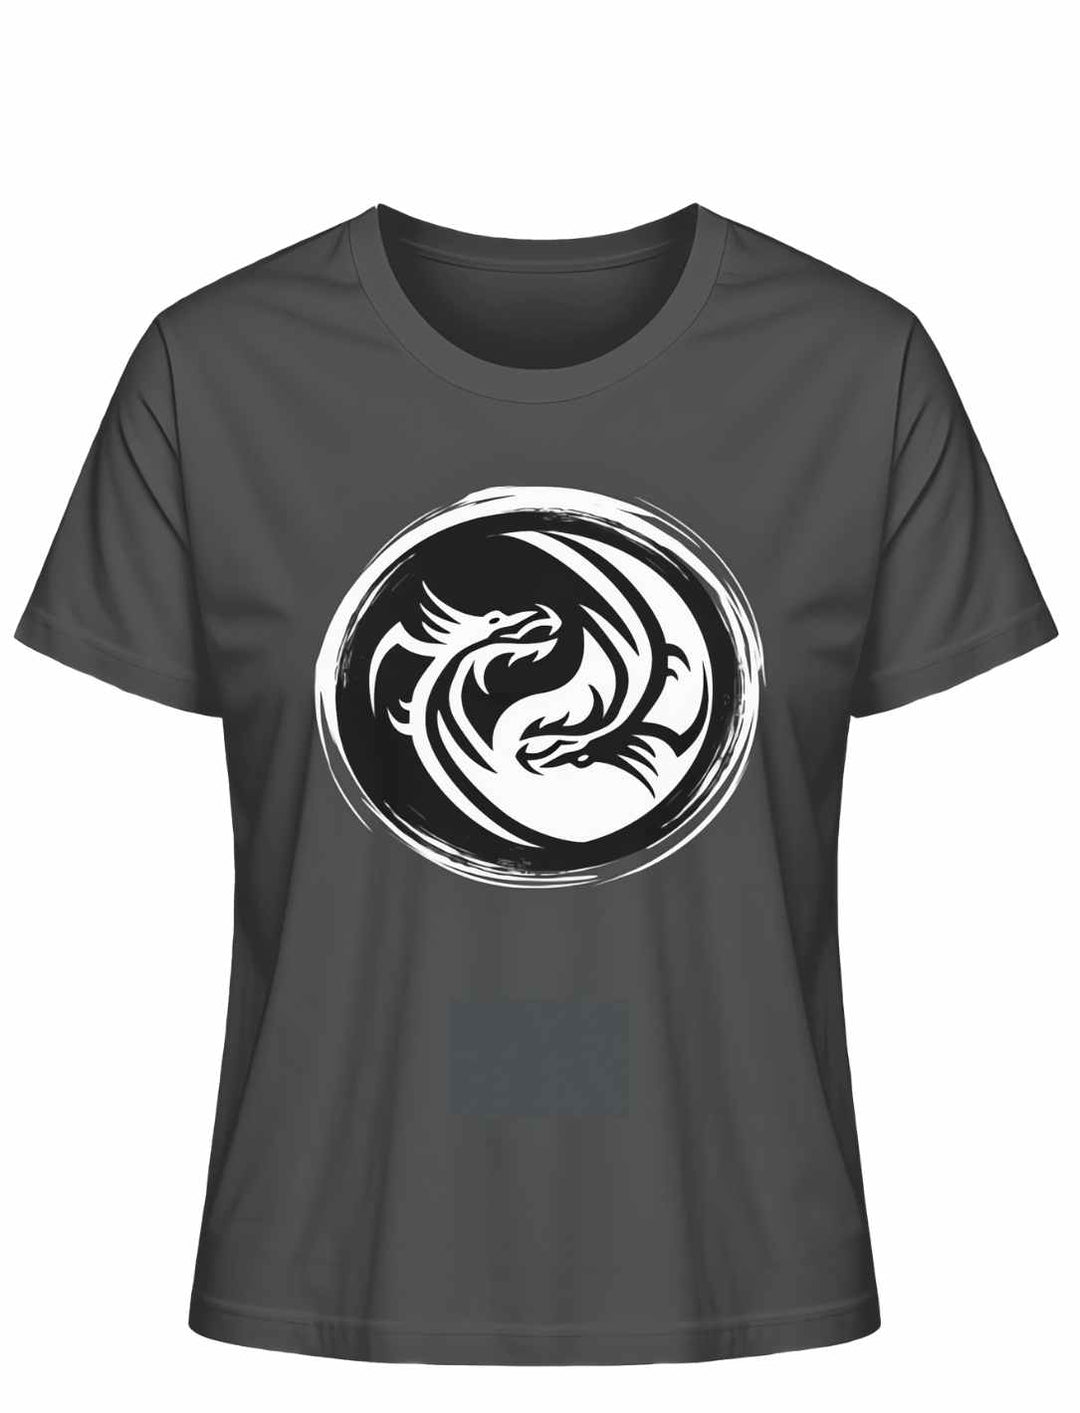 Anthrazit 'Drachensiegel des Gleichgewichts' T-Shirt mit Yin-Yang-Drachenmotiv auf weißem Grund.